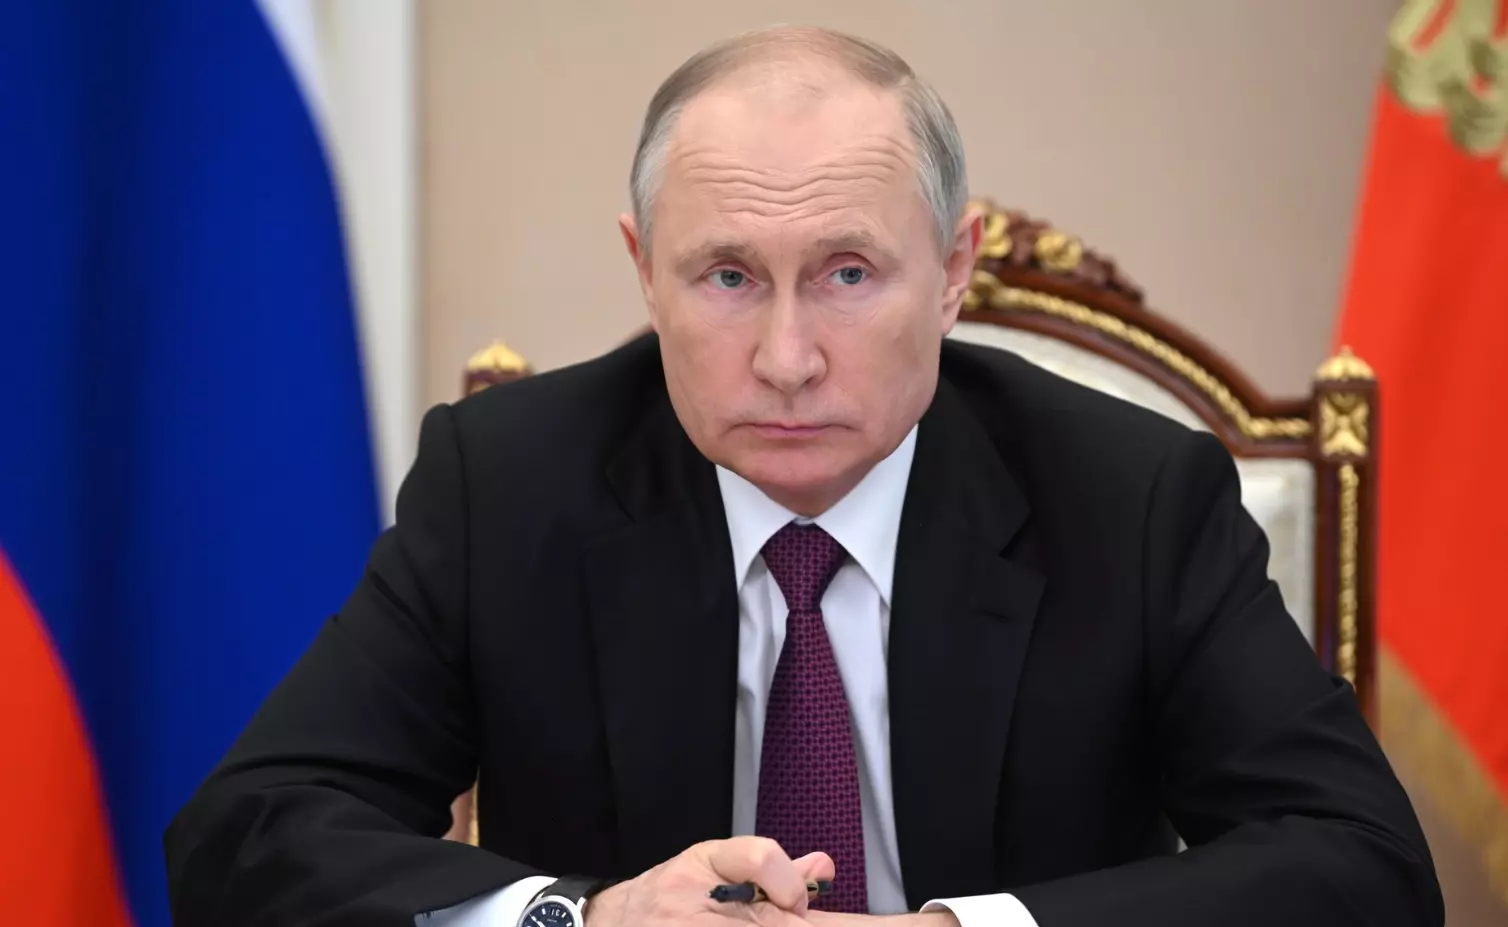 Закон о налоговых уведомлениях на «Госуслугах» подписал сегодня Владимир Путин